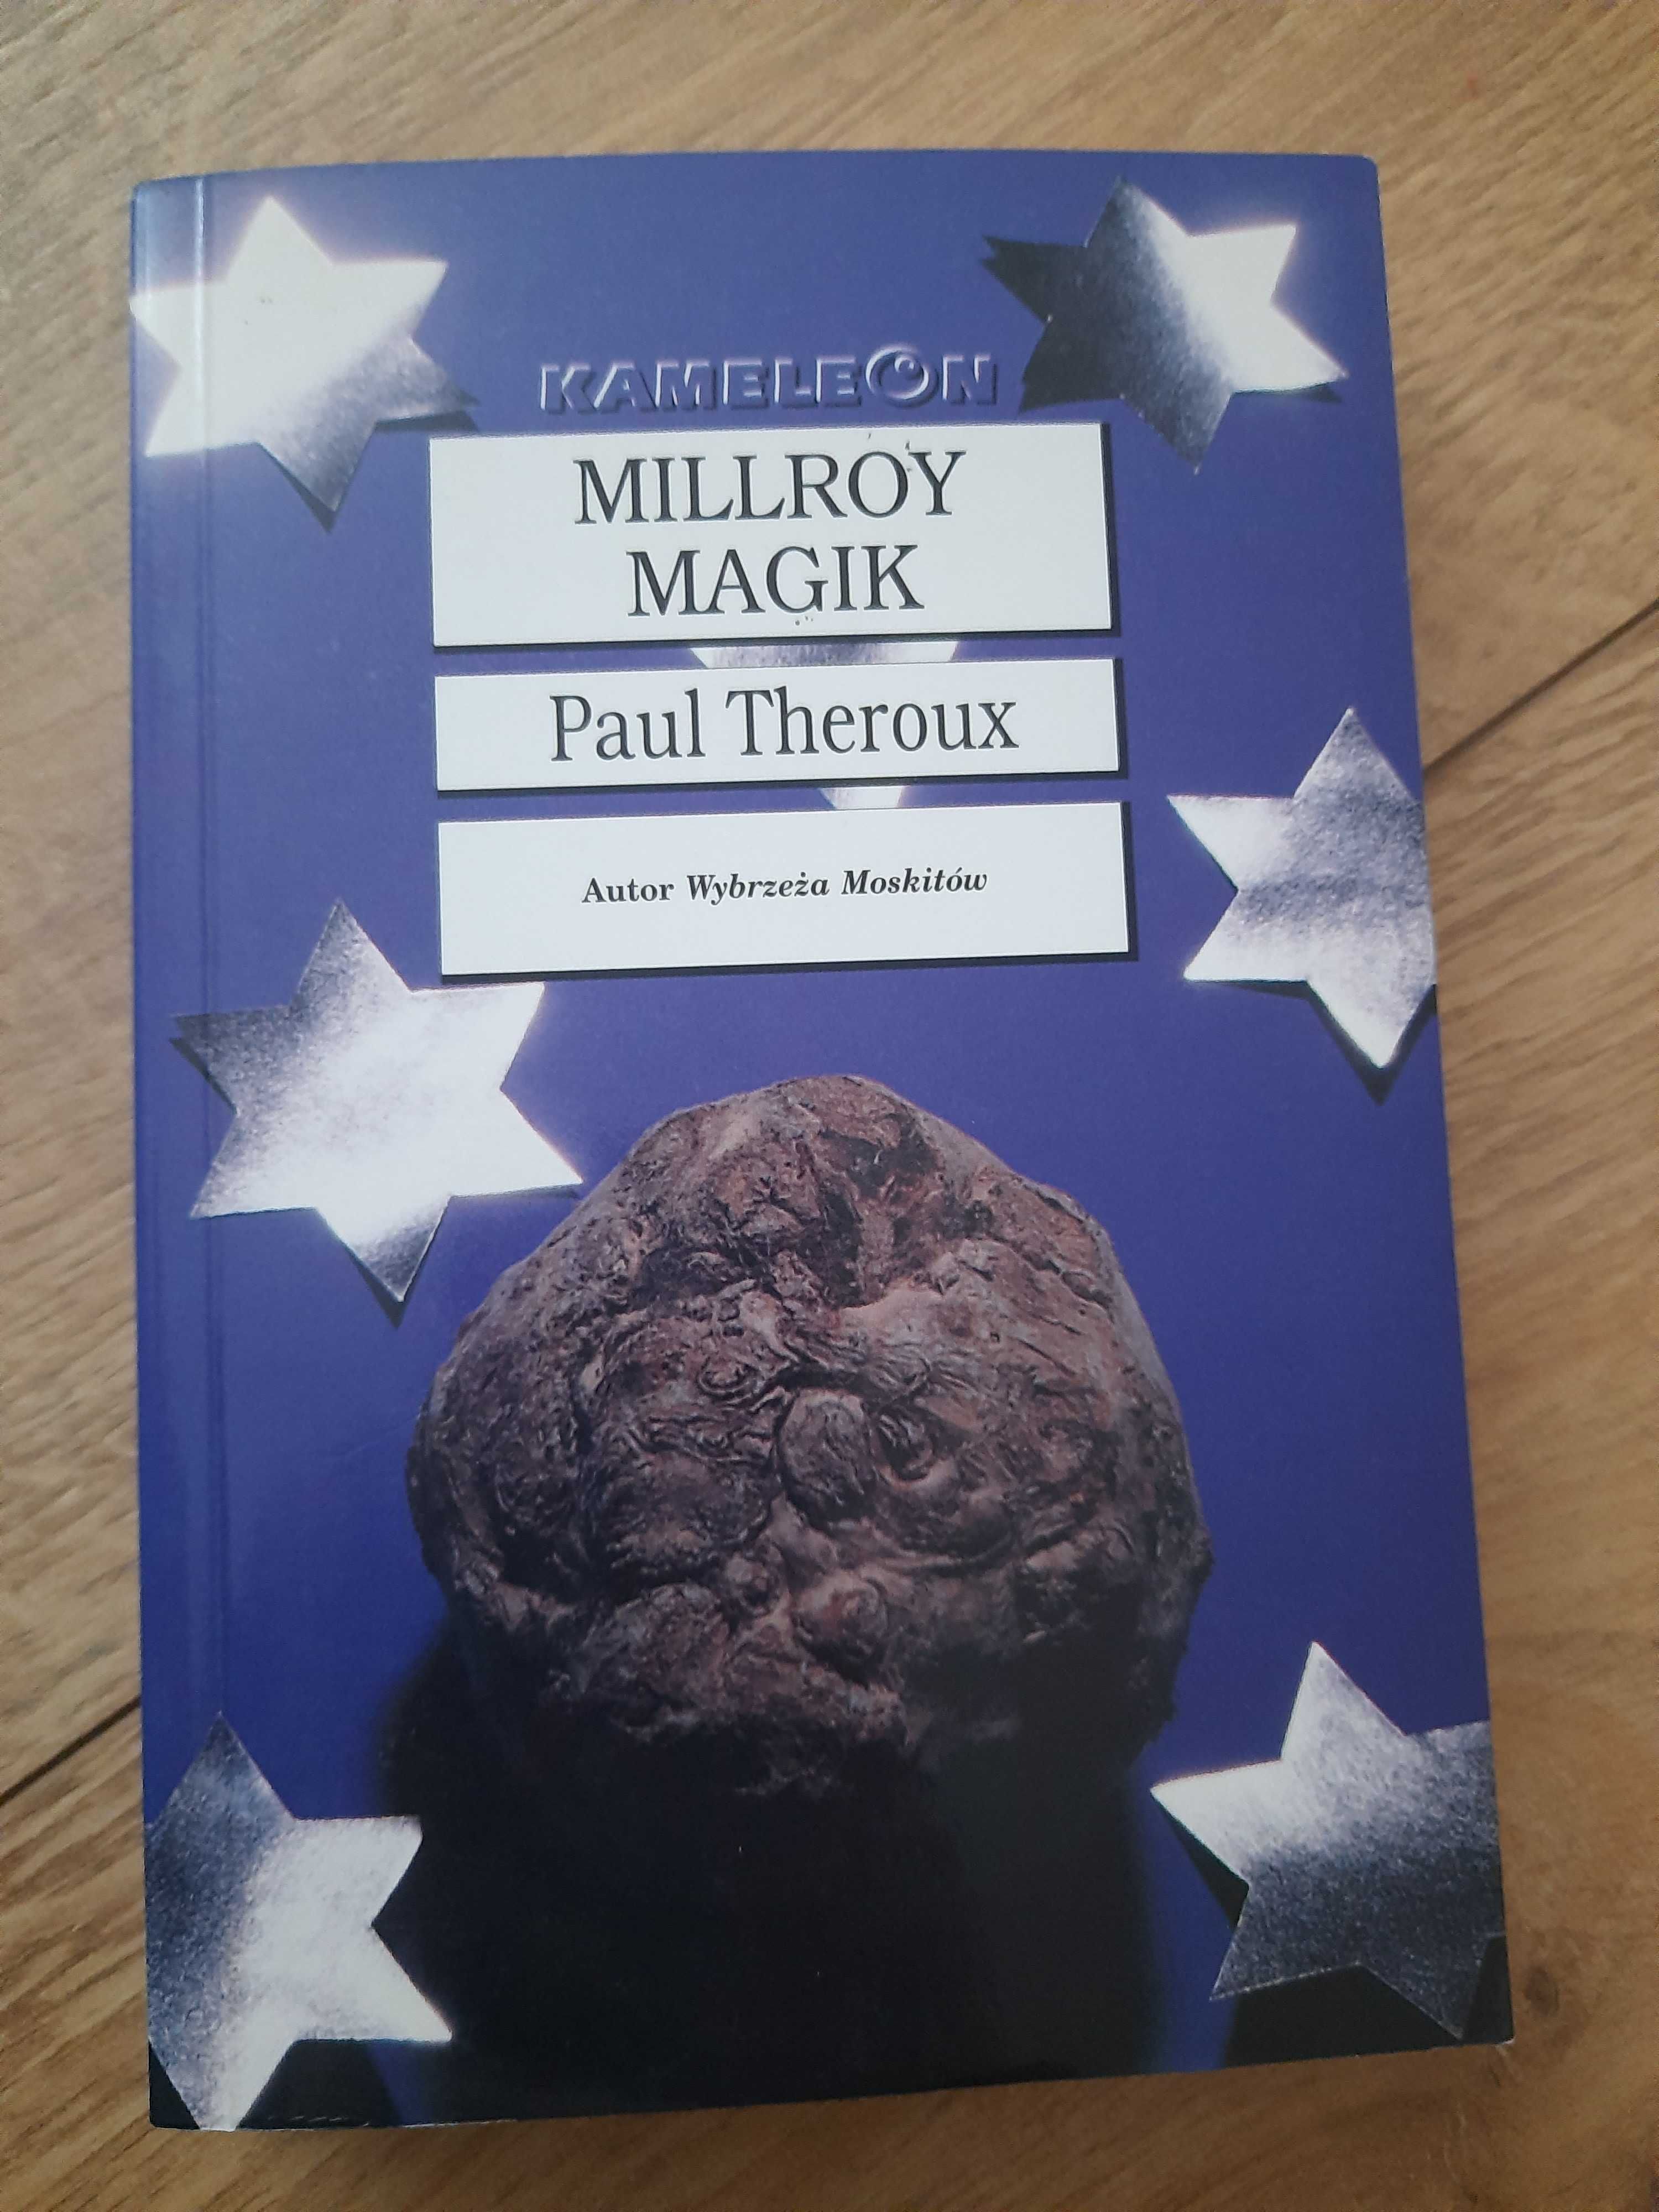 Paul Theroux - Millroy magik